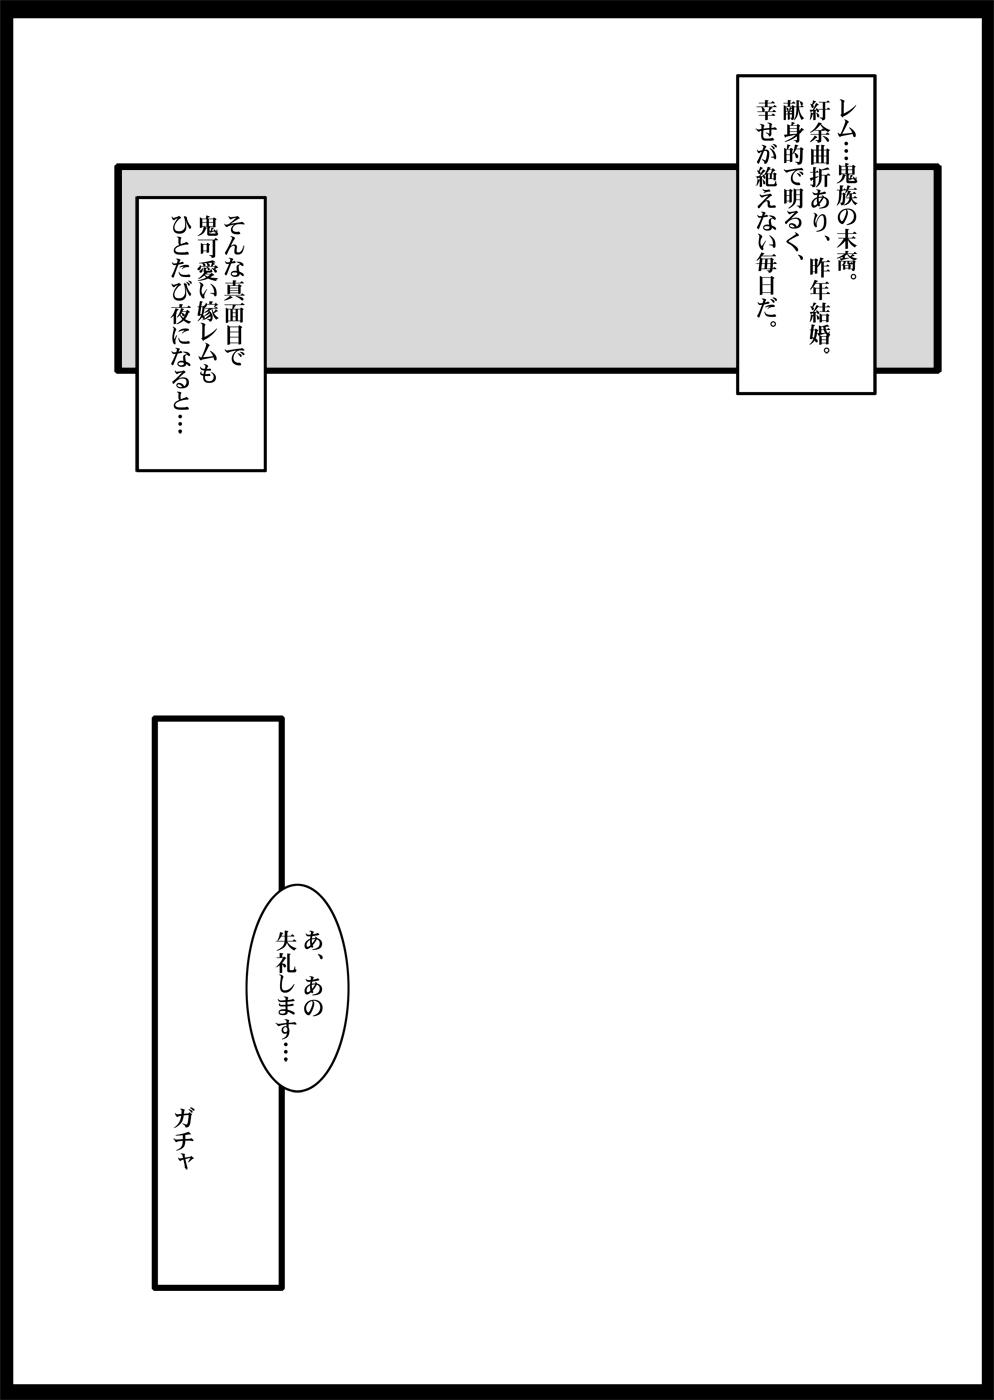 Tamanokoshi Zenbu Tsume 2001 ~ 2022 Venue Limited Edition 65